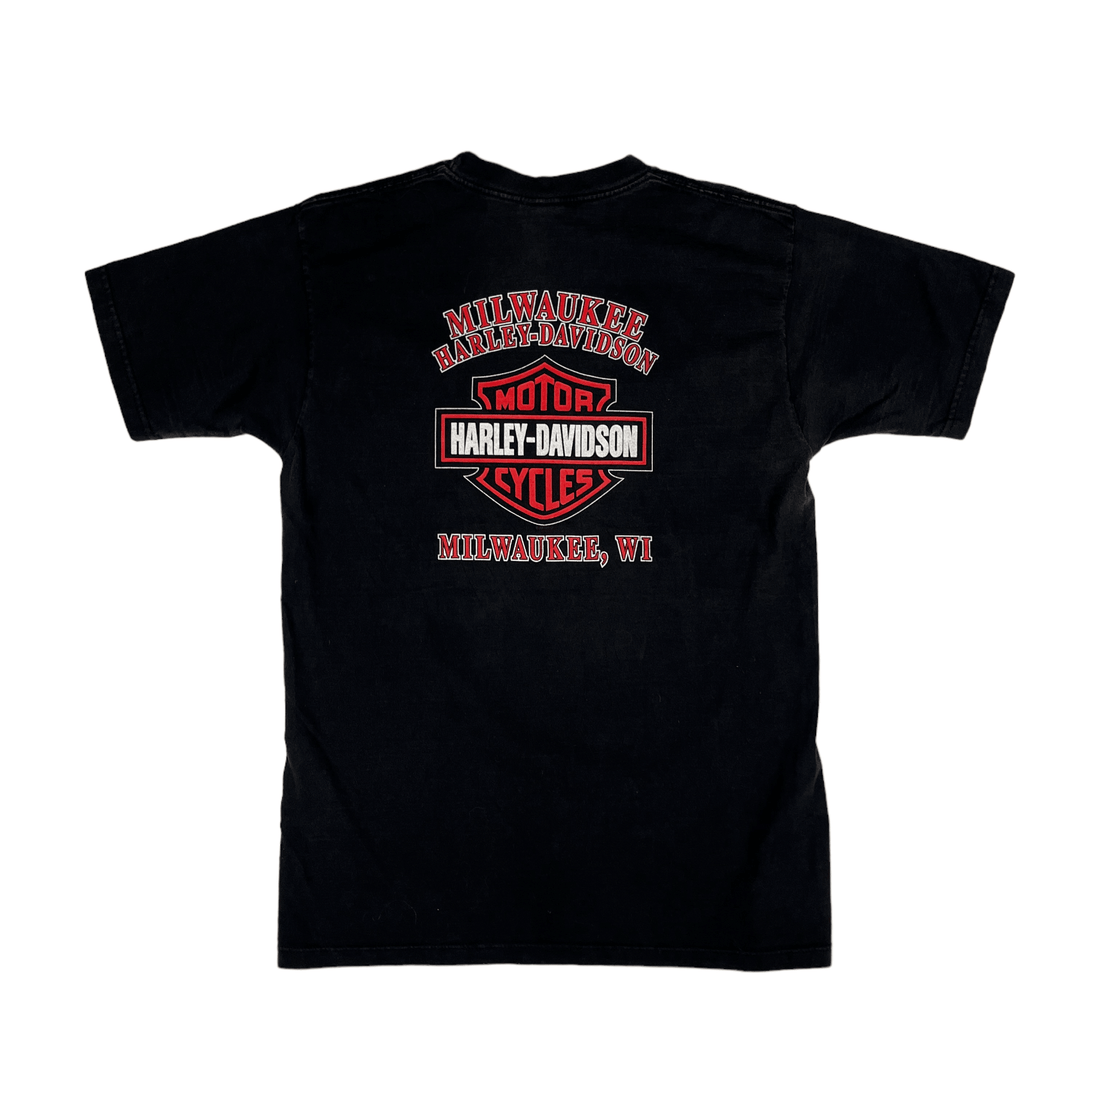 Vintage 90s Black Harley Davidson Tee - Large - The Streetwear Studio